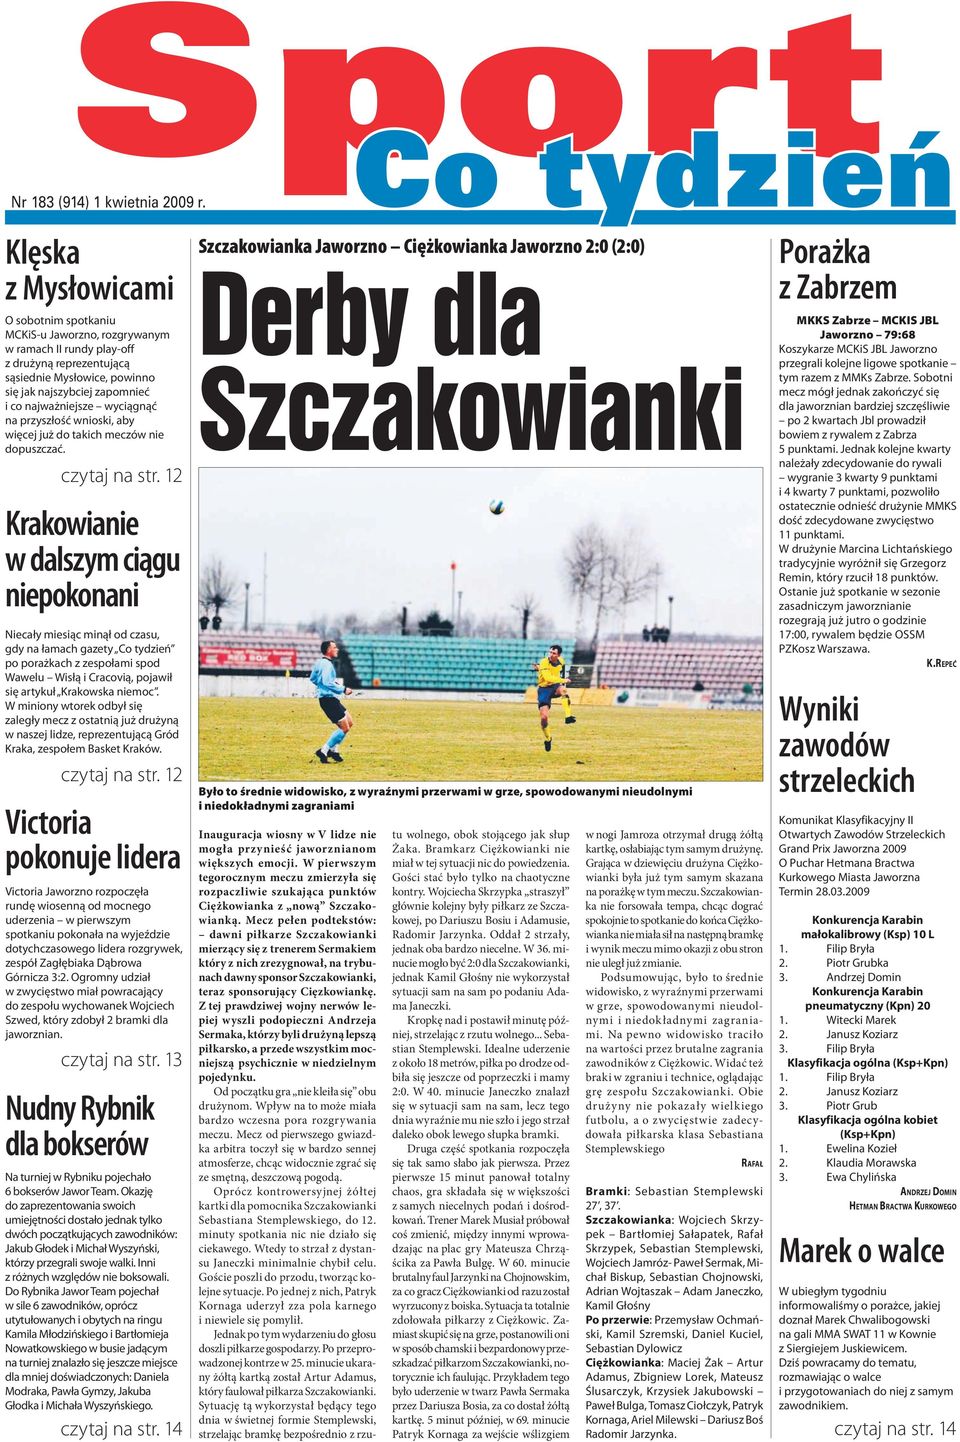 12 Krakowianie w dalszym ciągu niepokonani Niecały miesiąc minął od czasu, gdy na łamach gazety Co tydzień po porażkach z zespołami spod Wawelu Wisłą i Cracovią, pojawił się artykuł Krakowska niemoc.